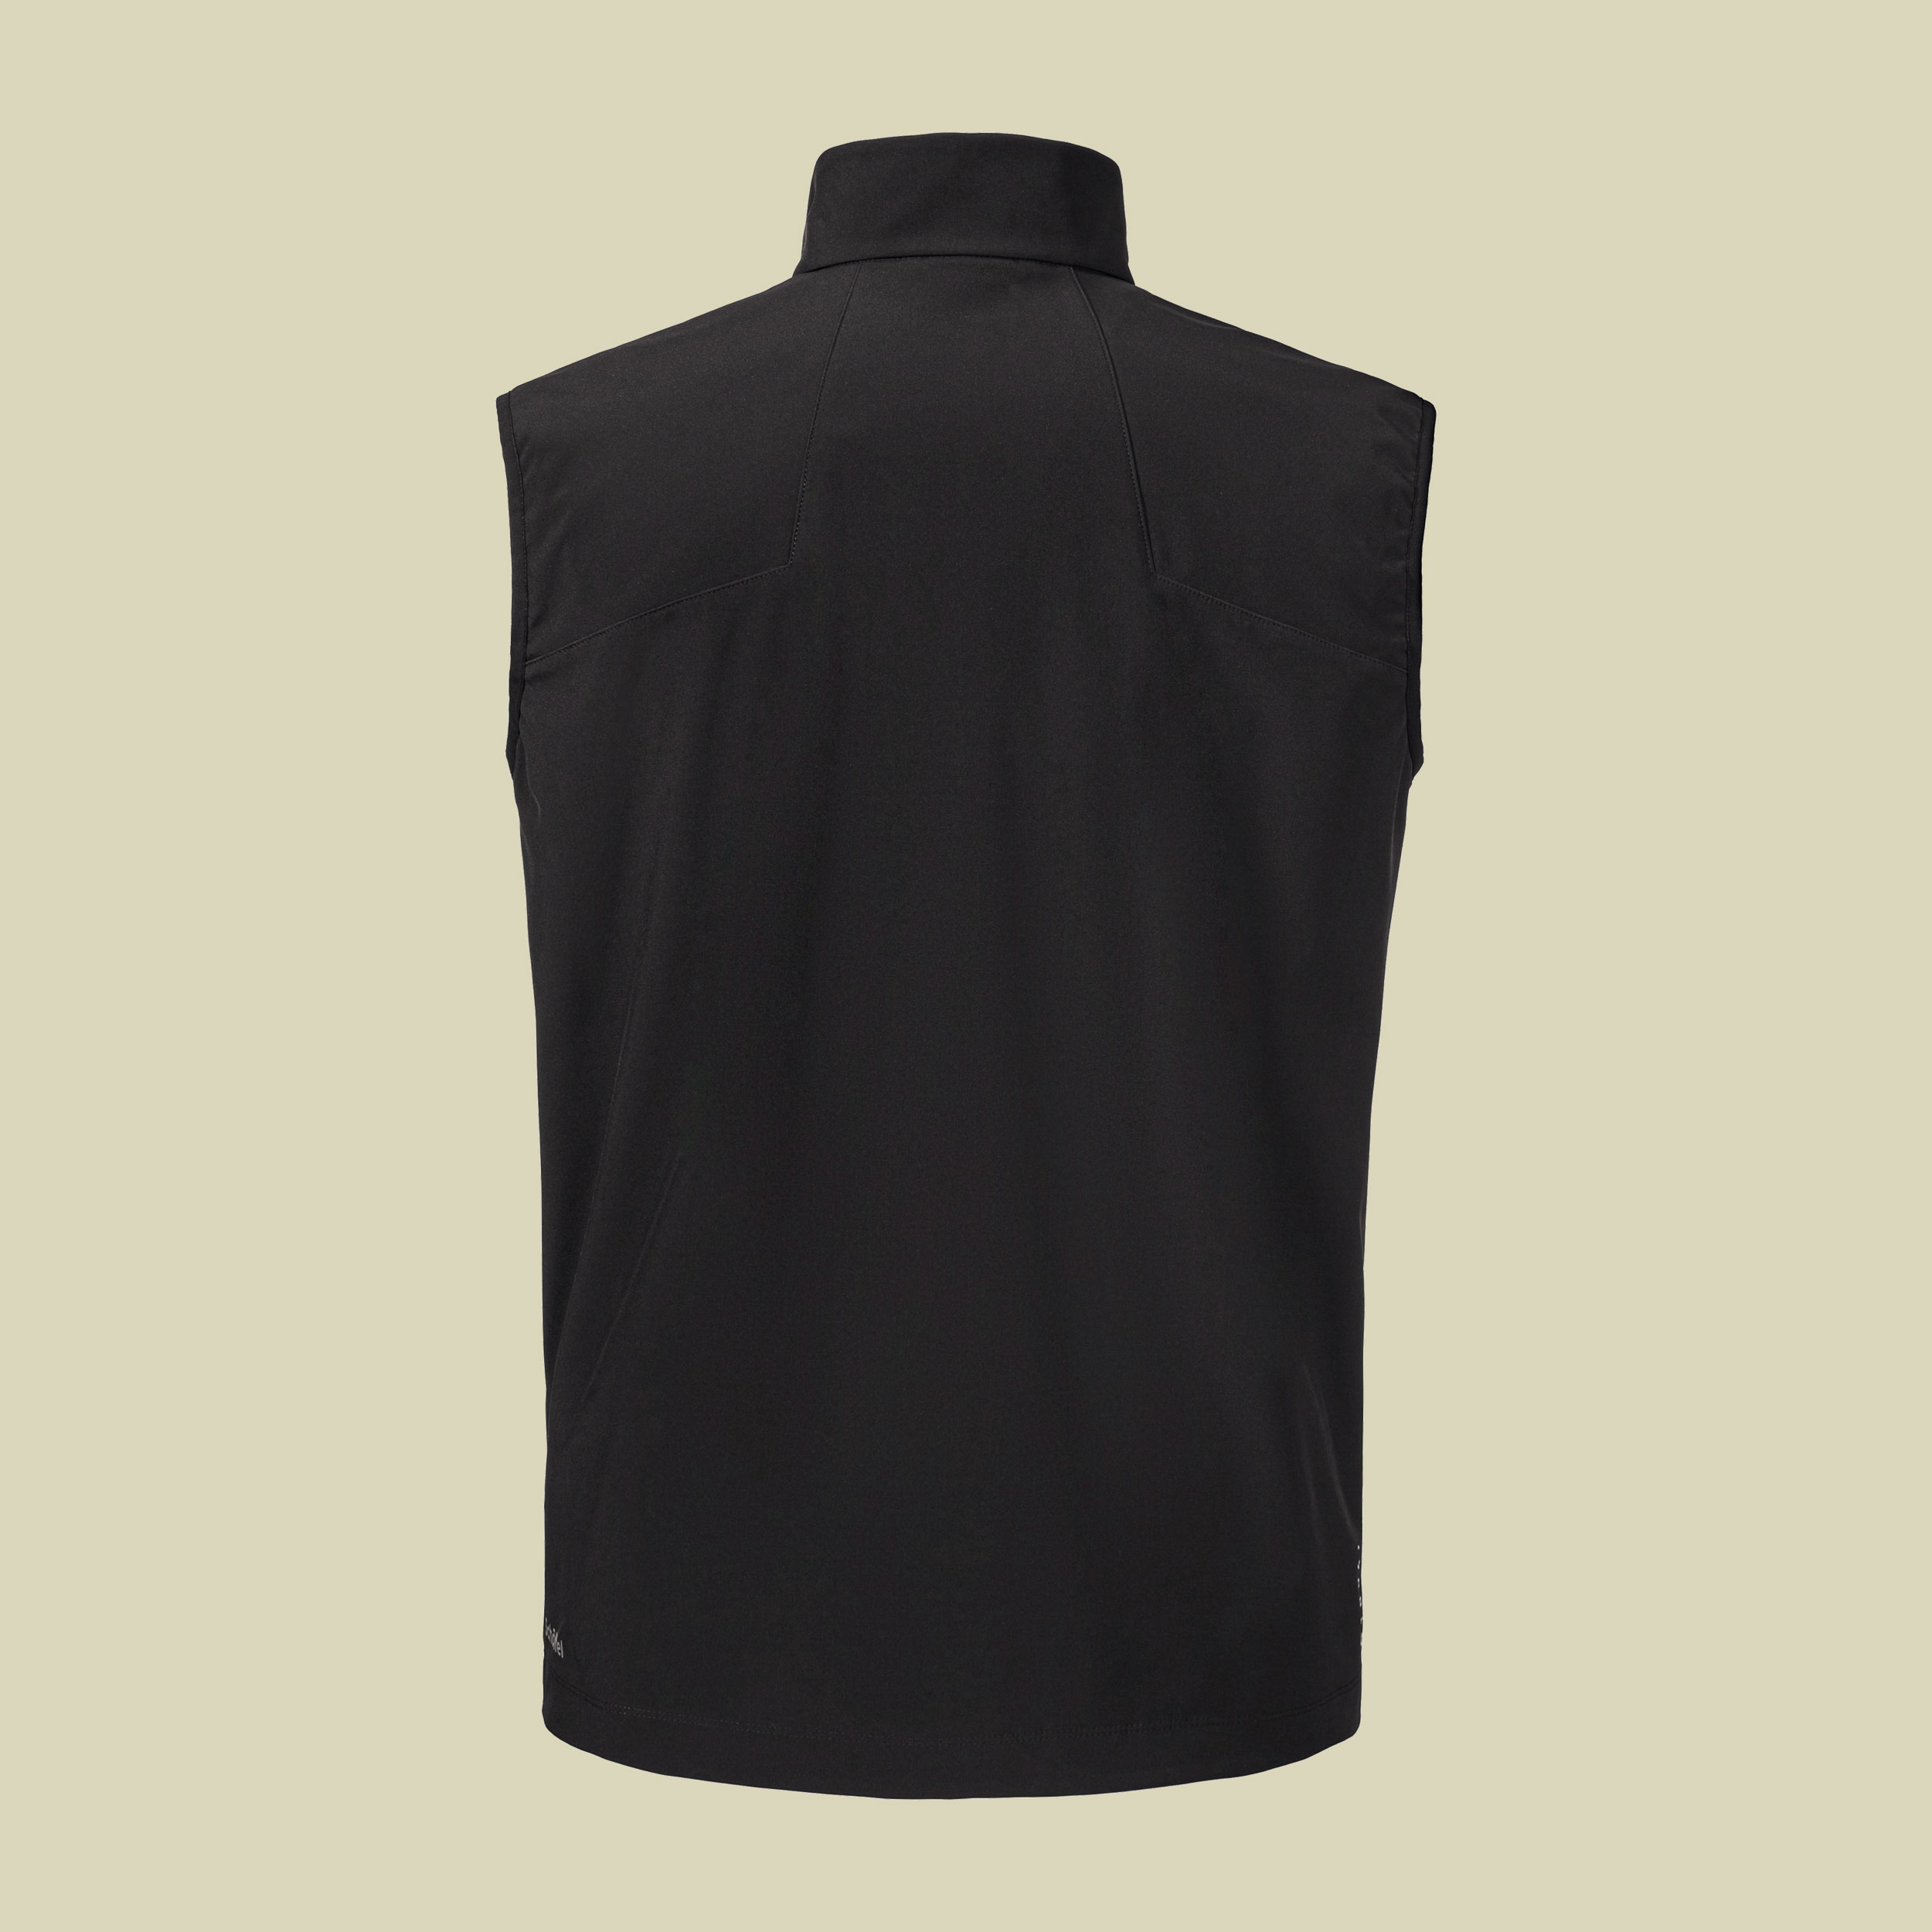 Softshell Vest Tonion M Men 52 schwarz - black